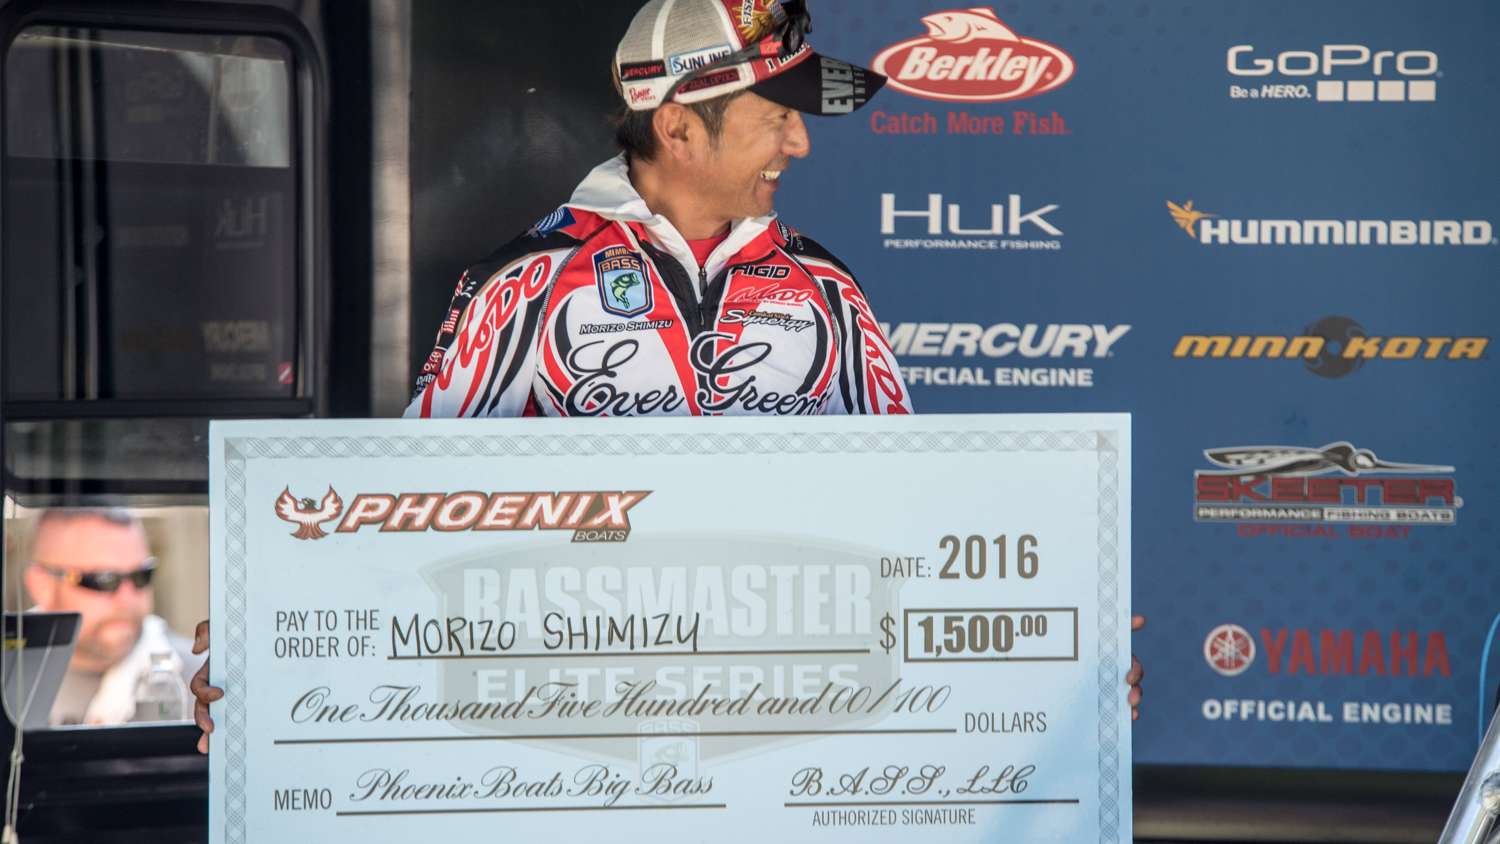 Morizo Shimizu (47th, 11-6) picked up some bonus money from Phoenix Boats.